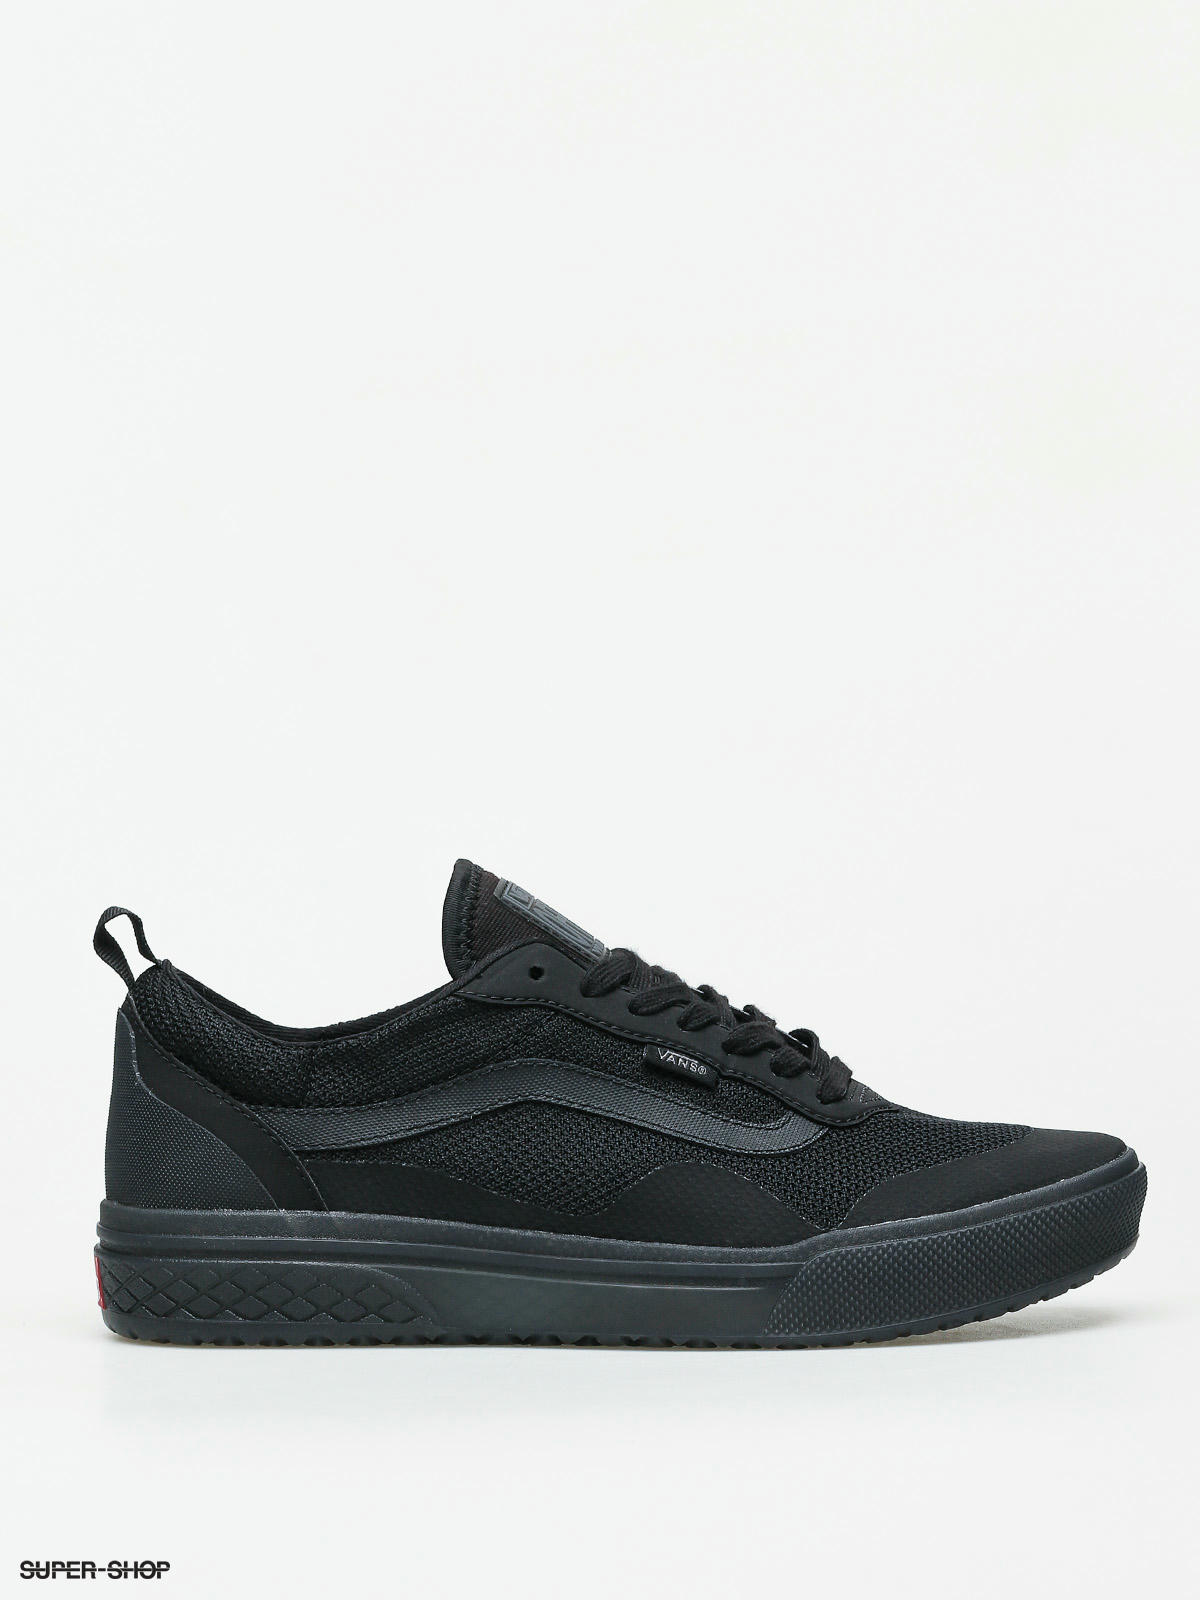 Vans Morph Rapidweld Shoes (black/black)